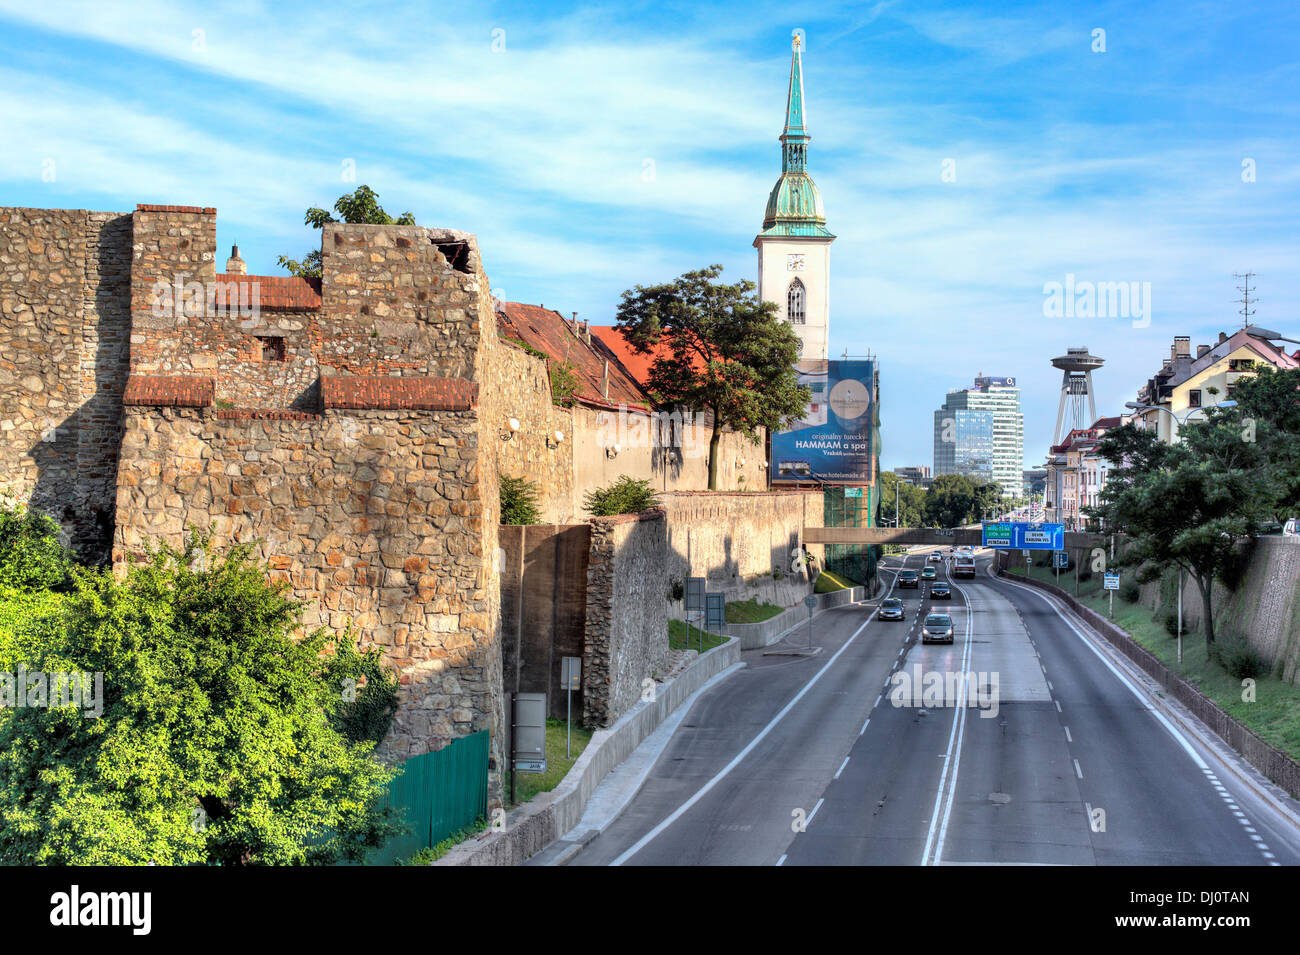 City wall and St. Martin's Cathedral, Bratislava, Slovakia Stock Photo